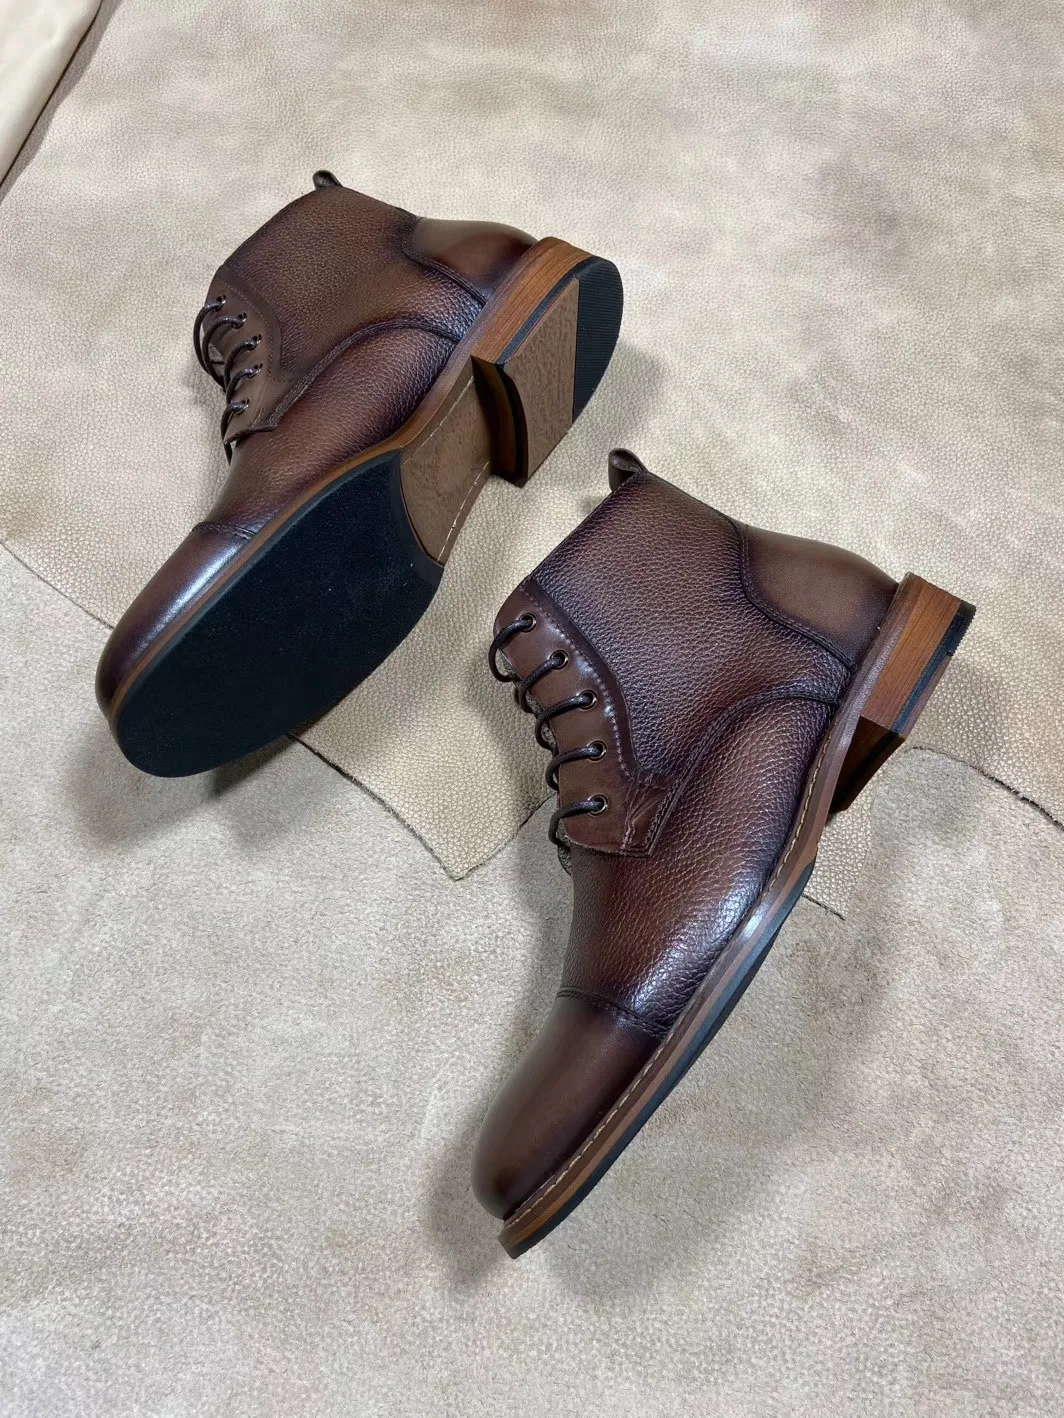 QYFCIOUFU/Модные Ботинки Martin; Цвет черный, коричневый, хаки; Мужские модельные ботинки; официальные мужские ботильоны из натуральной коровьей кожи на шнуровке